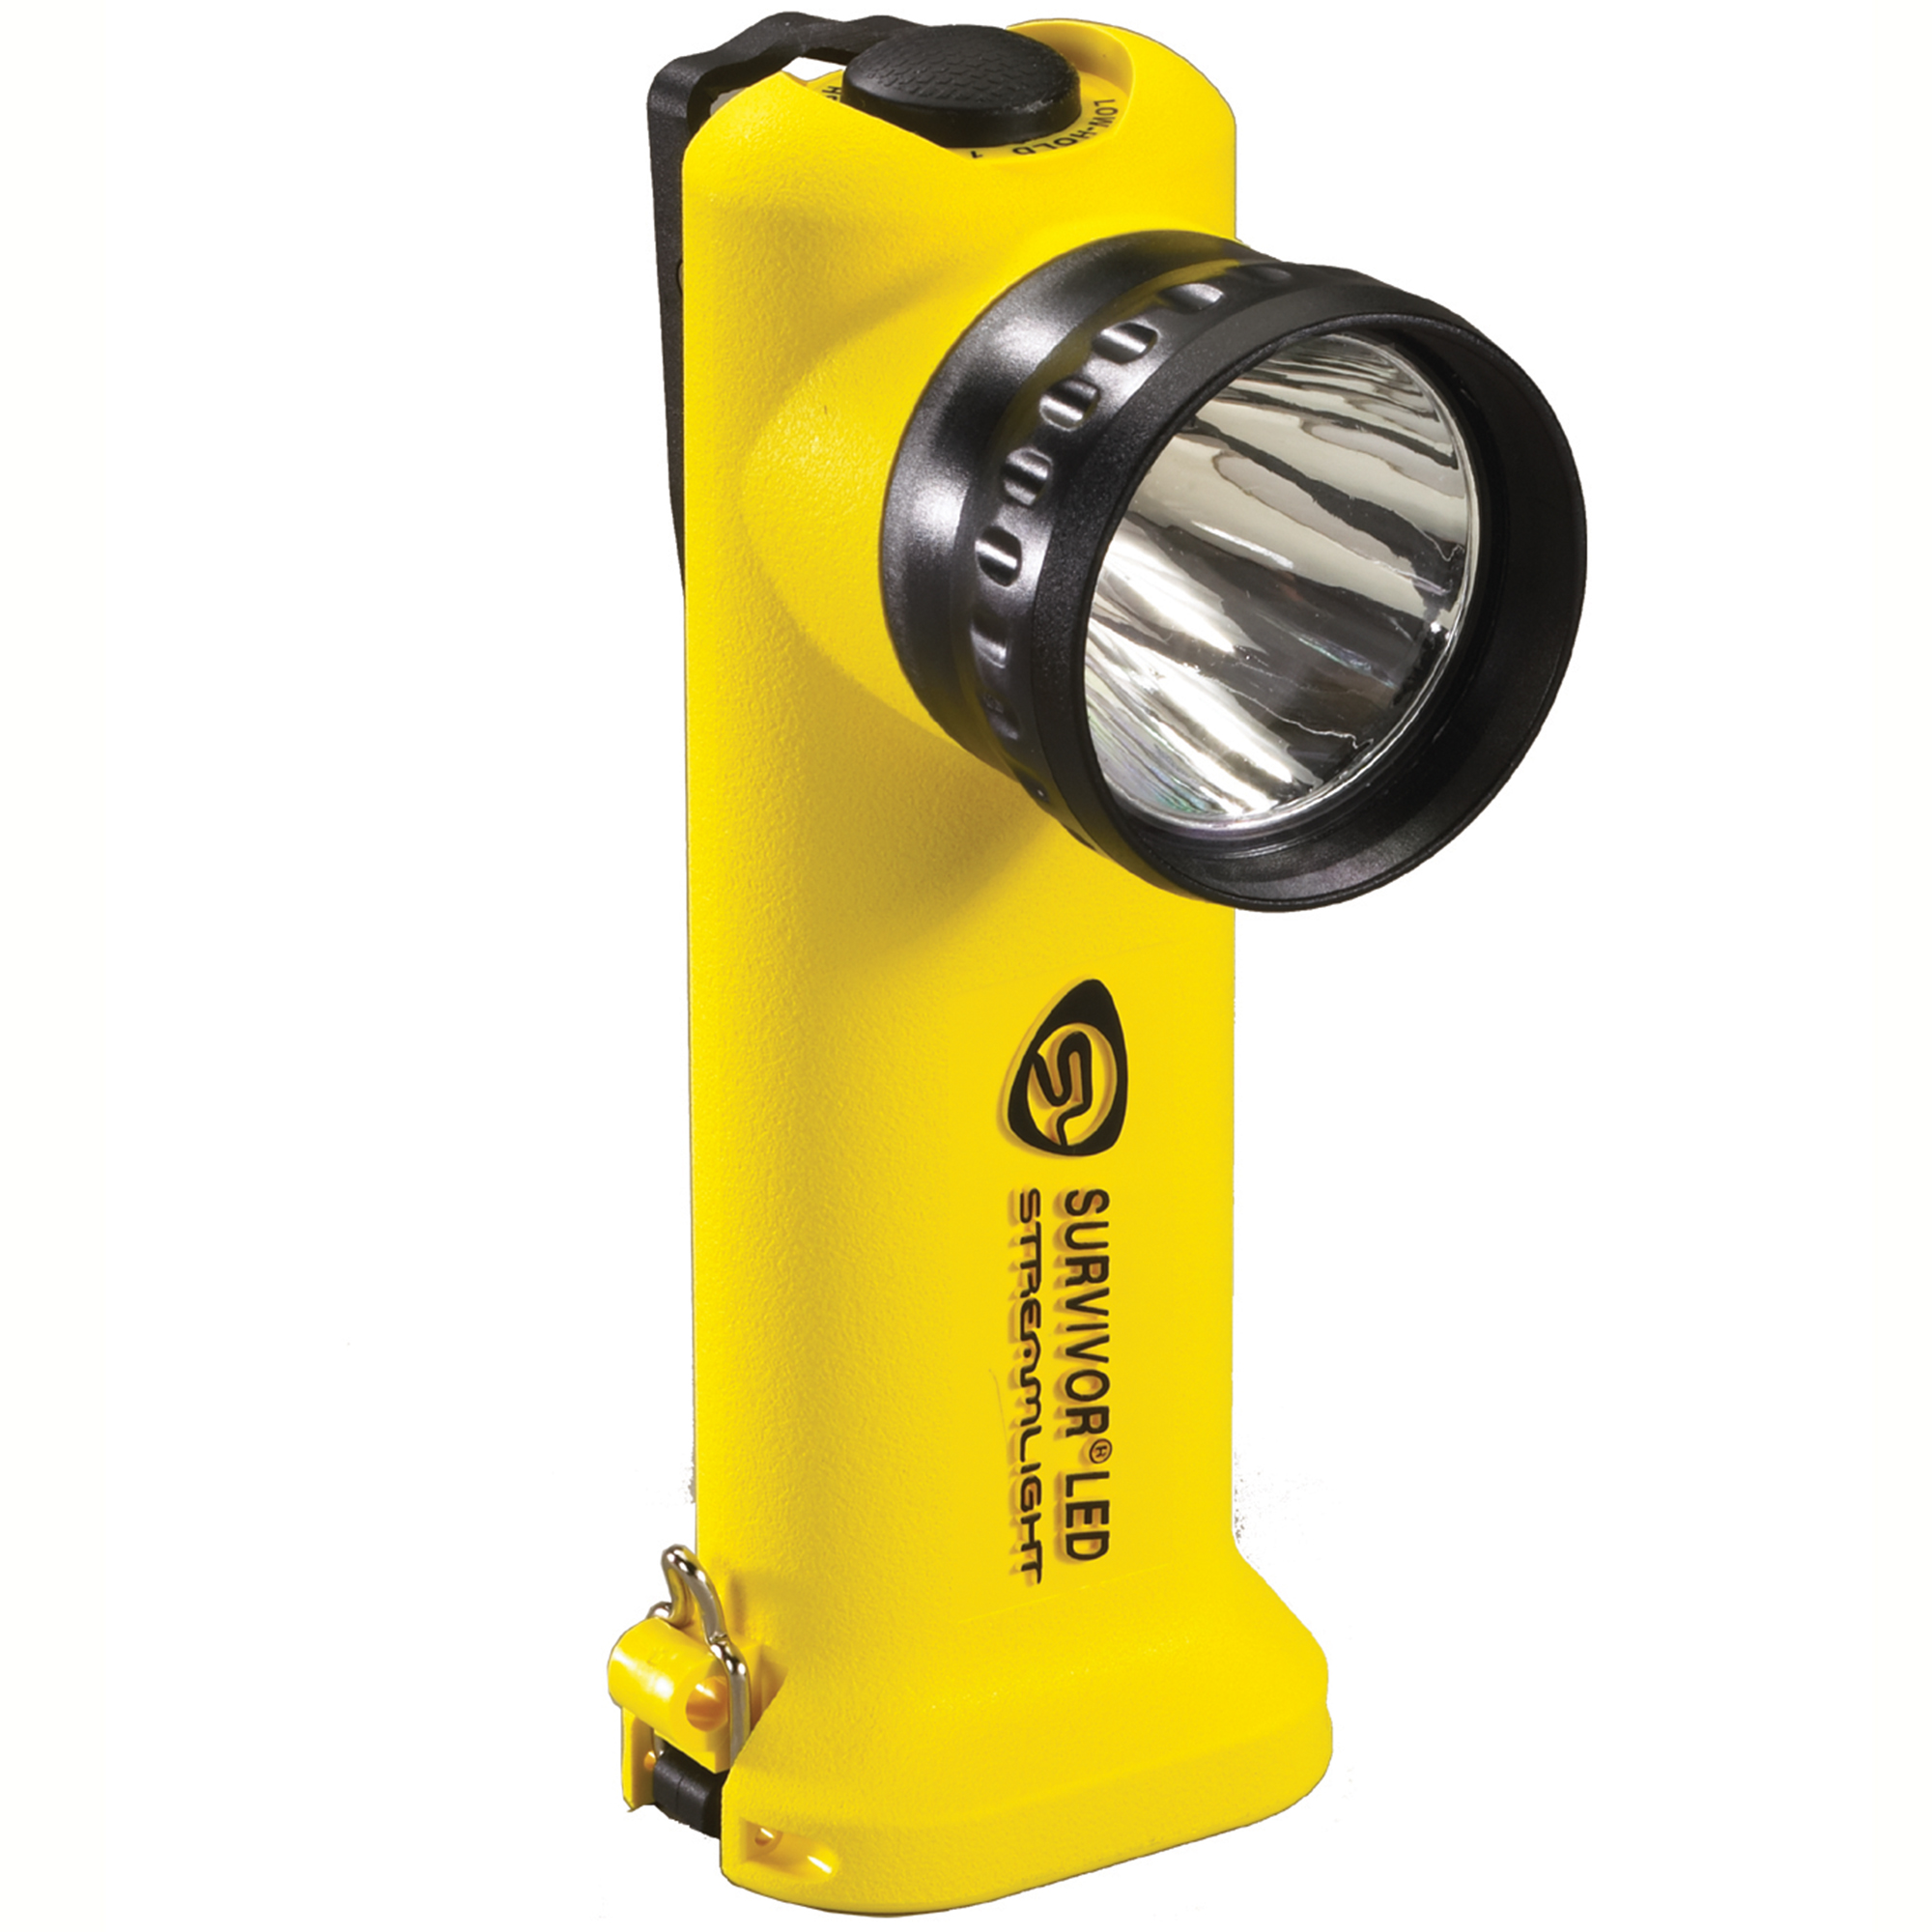 Streamlight Survivor LED-Alkaline Model Flashlight FREE S&H 90561 